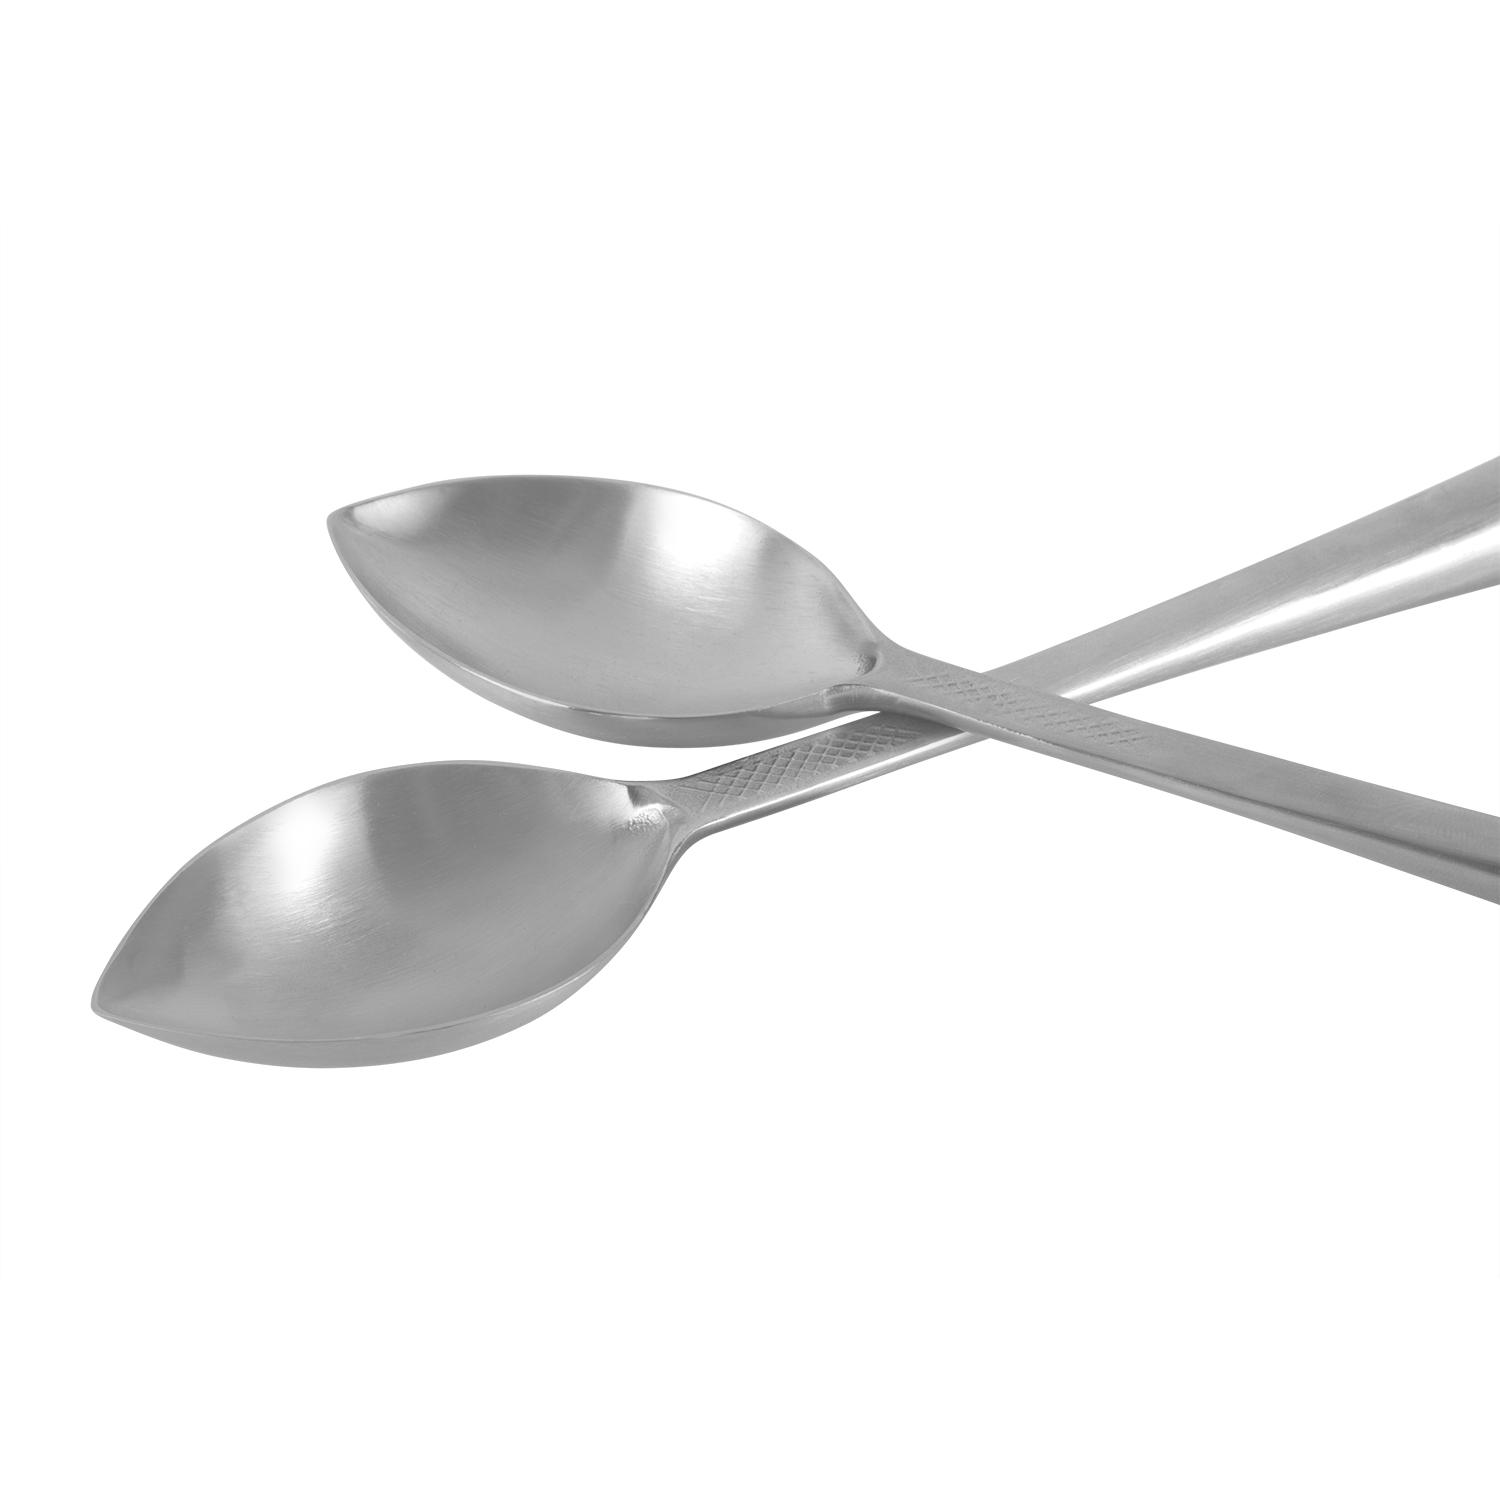 Quenelle spoon prototype.